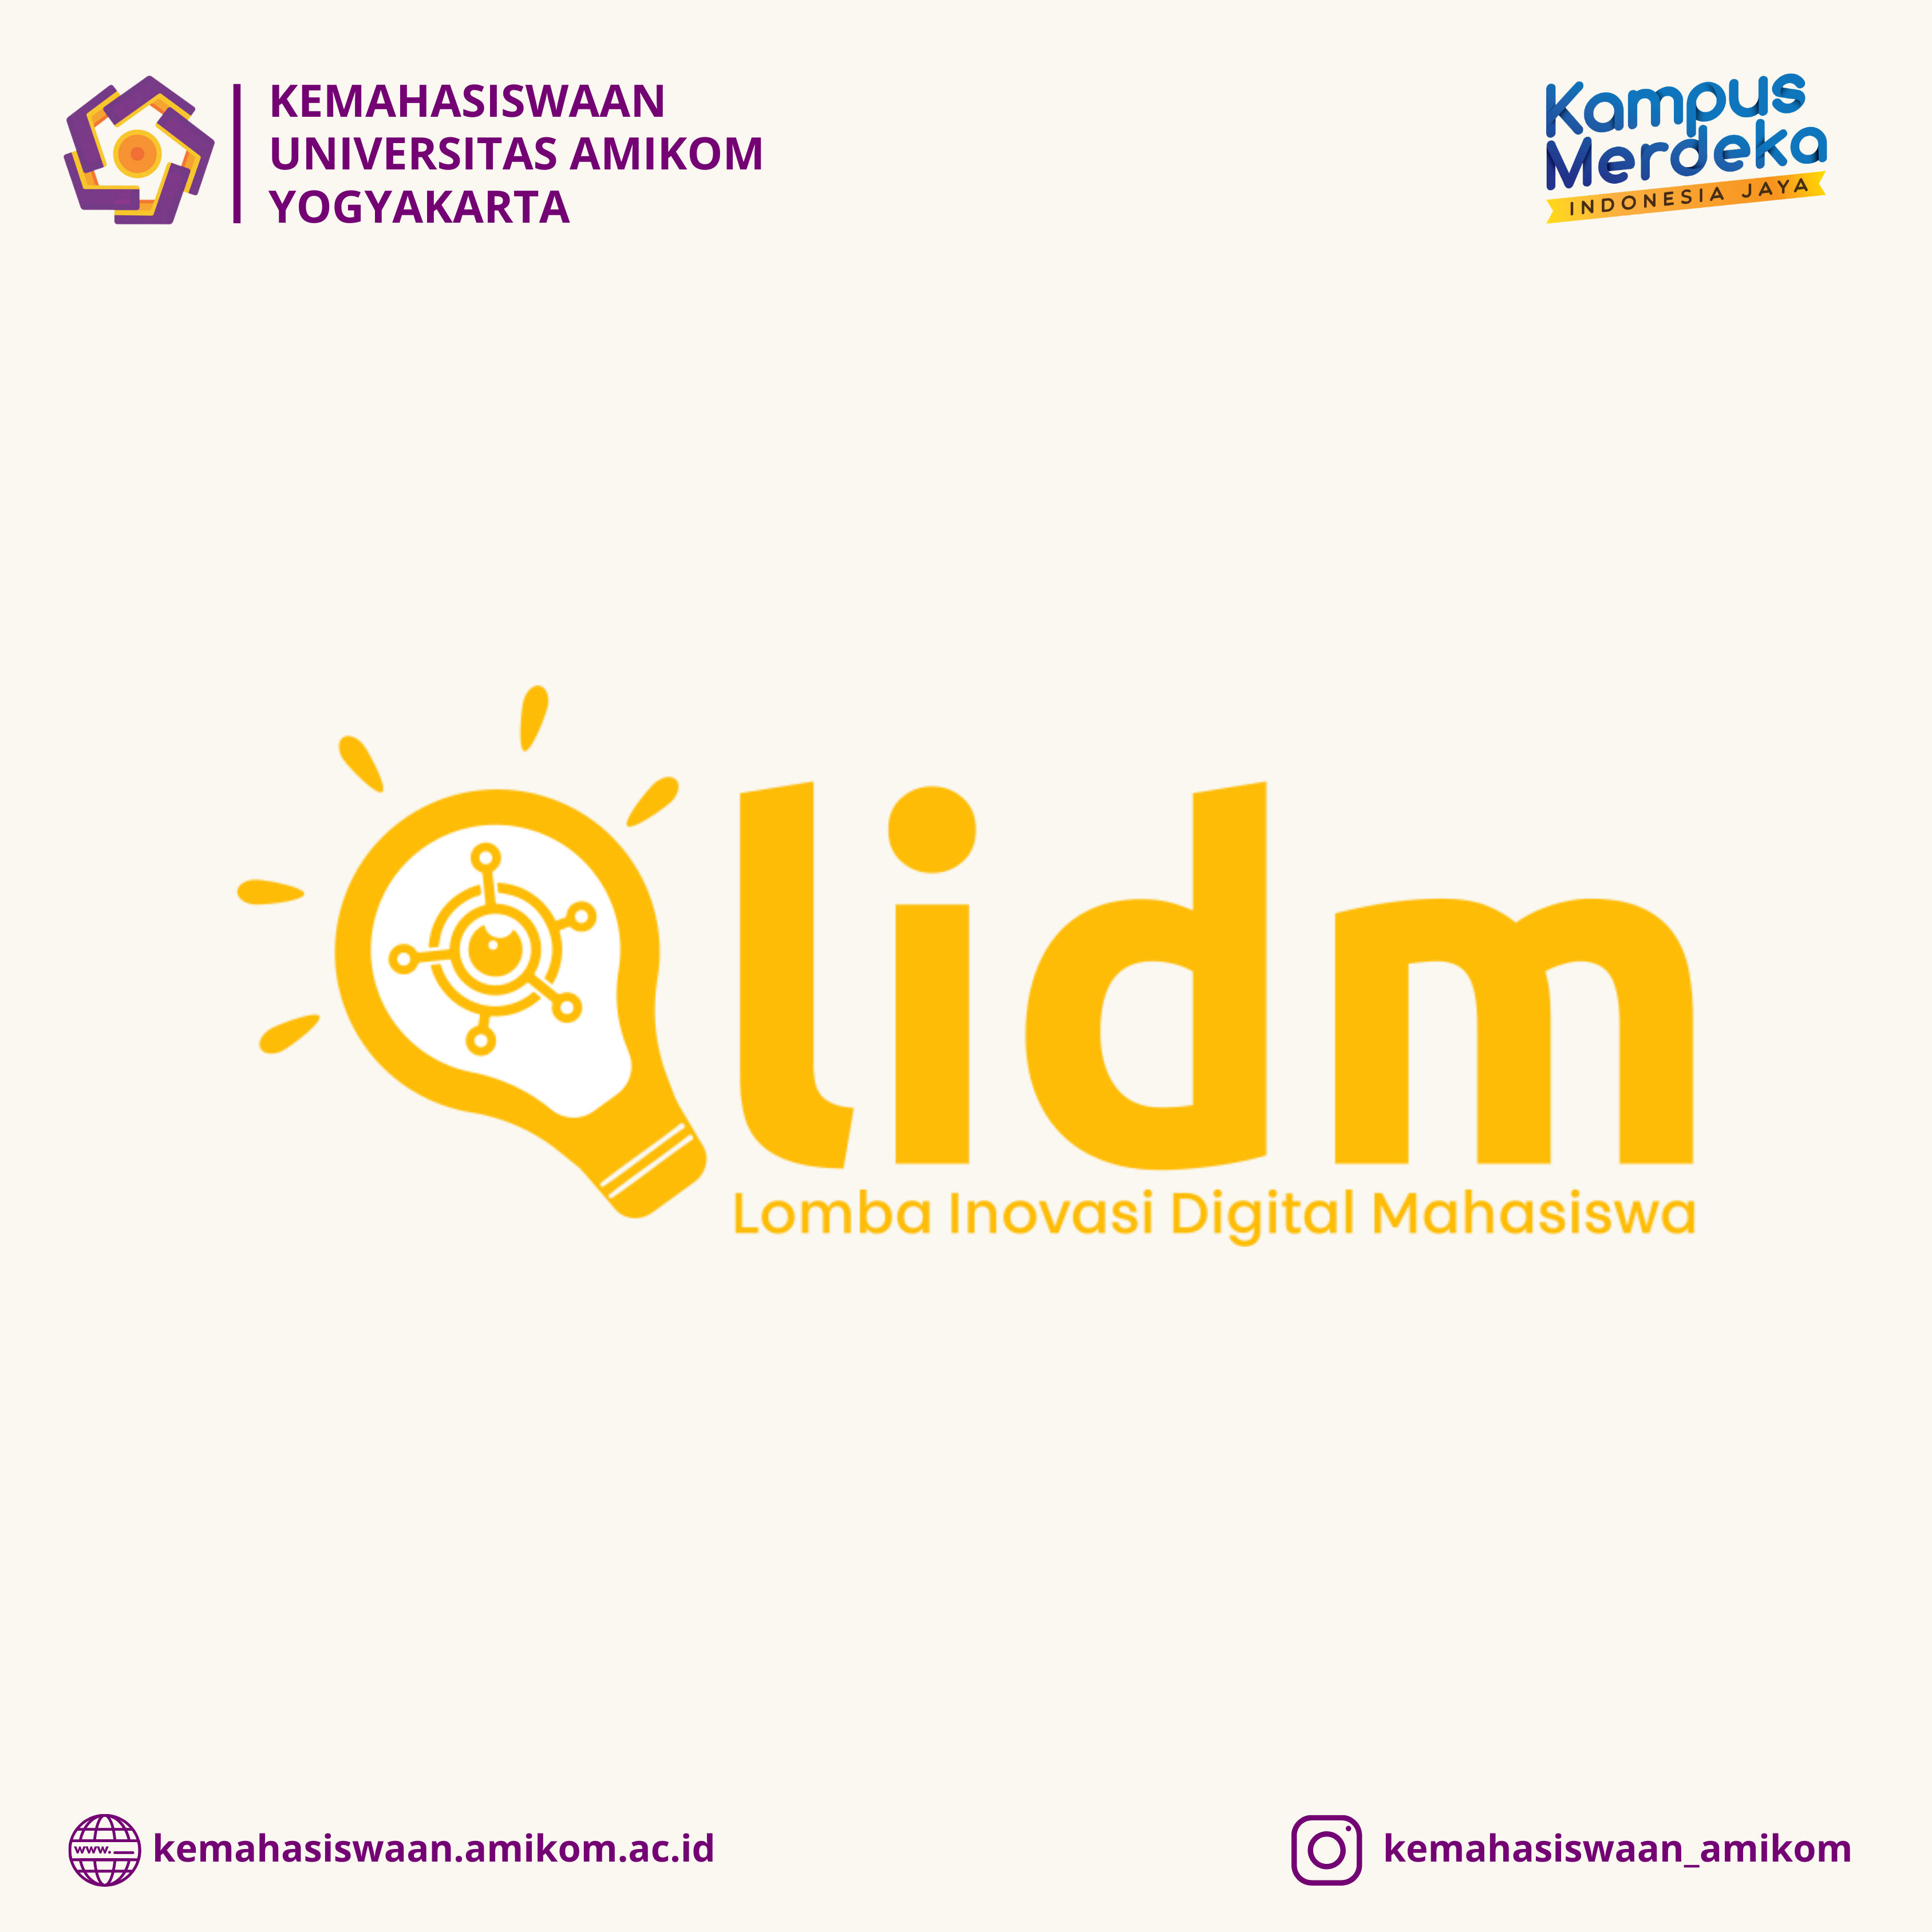 Pendaftaran Lomba Inovasi Digital Mahasiswa (LIDM)